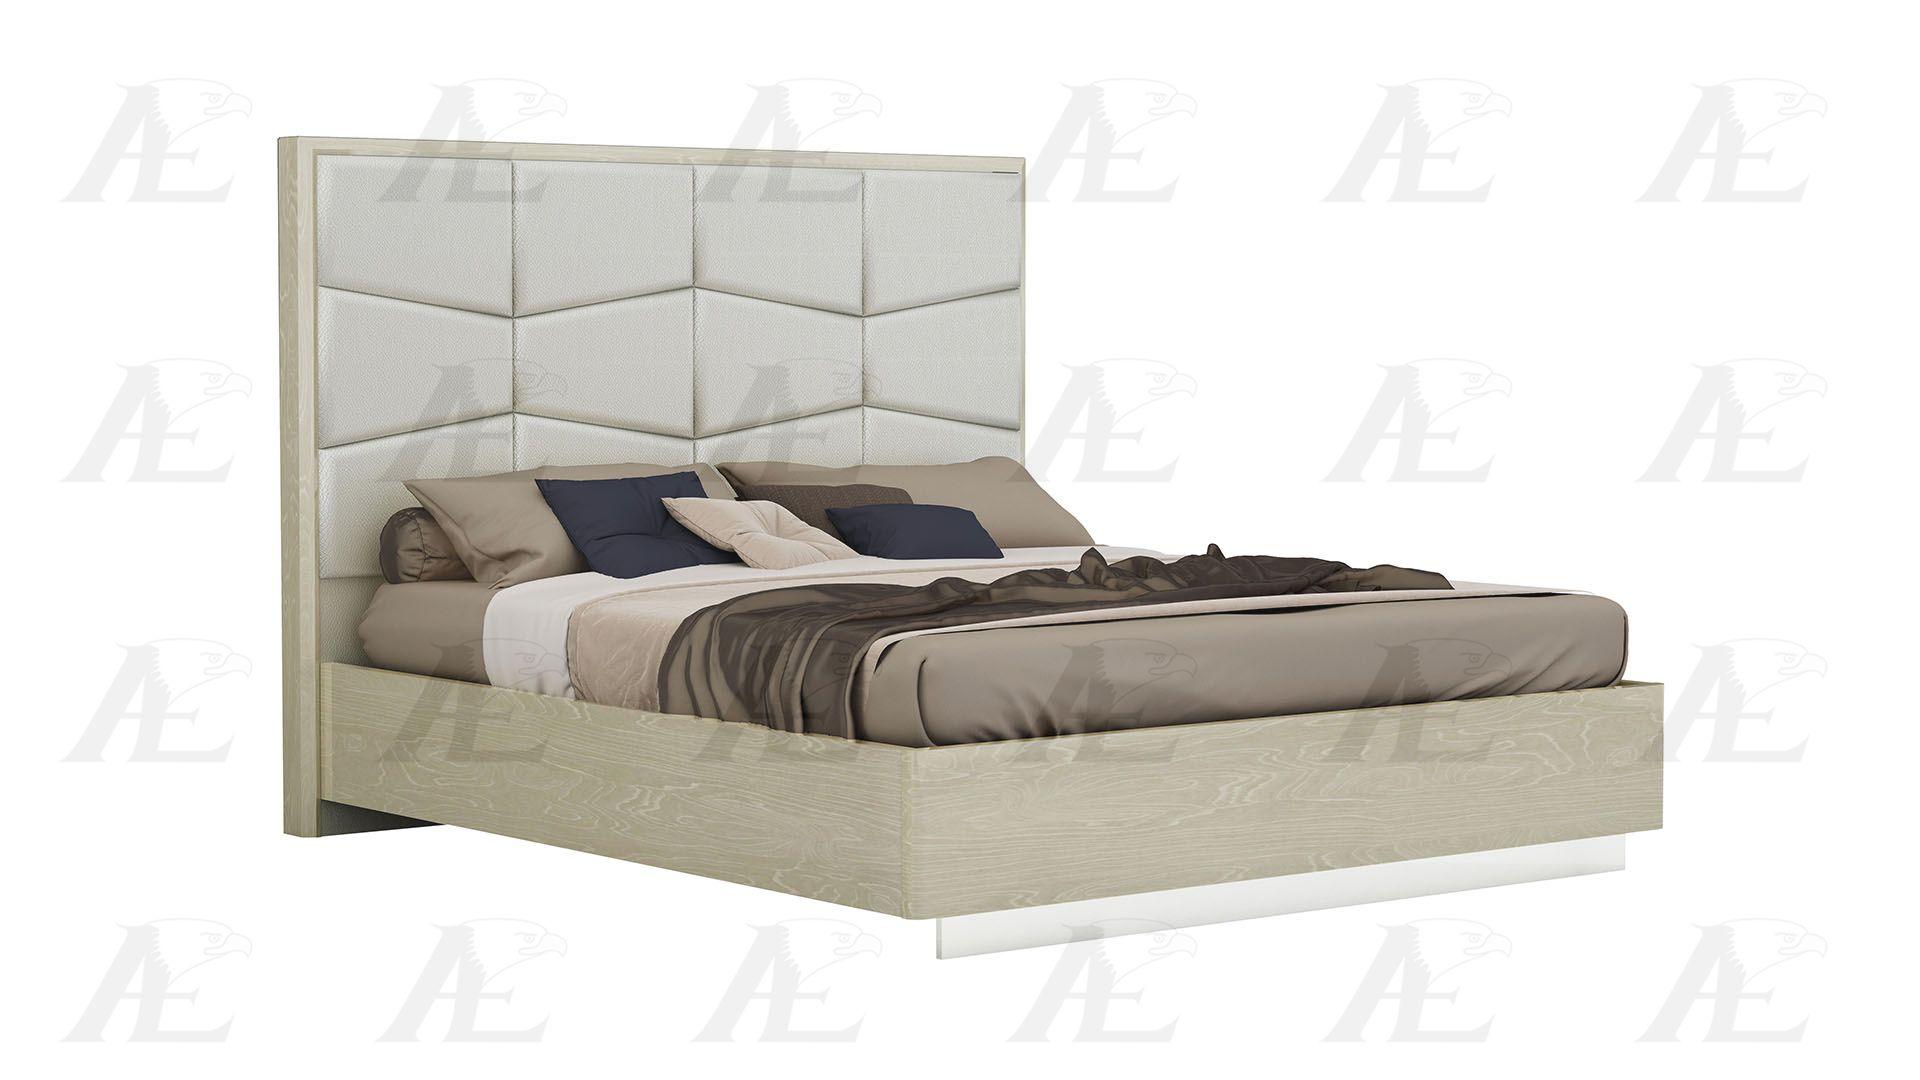 Contemporary, Modern Platform Bedroom Set P108-BED-EK P108-BED-EK -Set-6 in Light Walnut, Beige PU